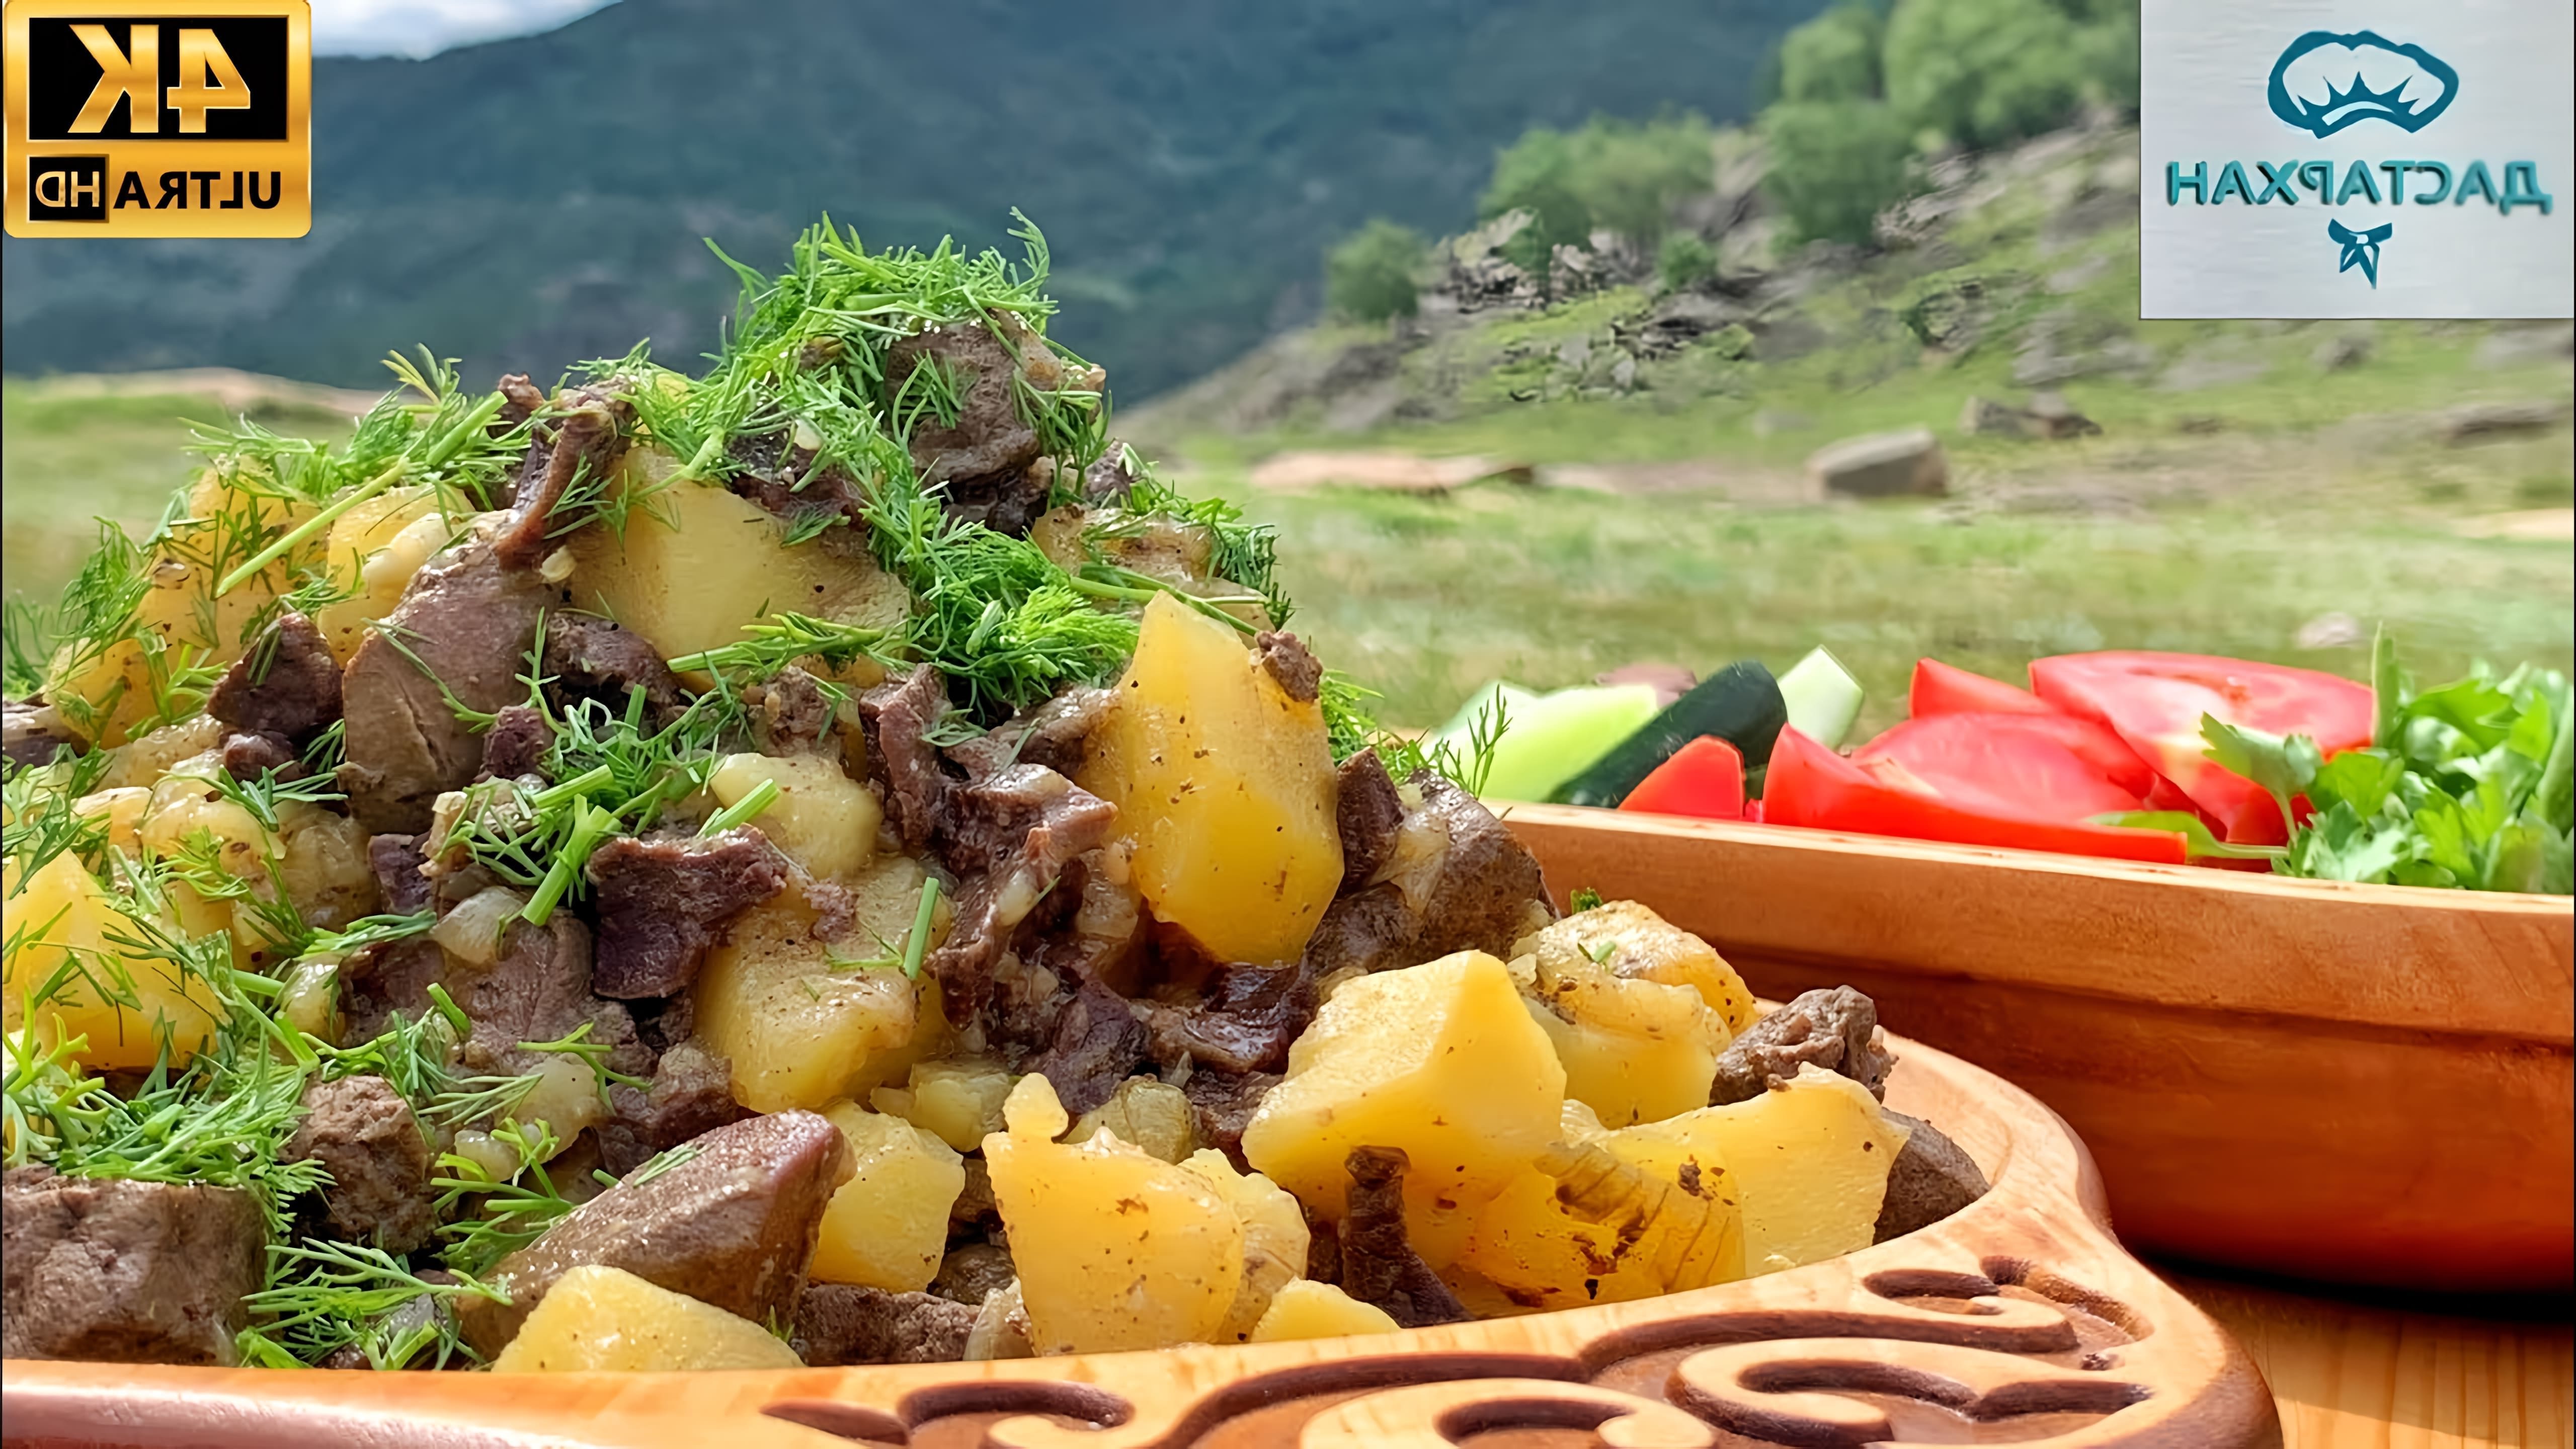 В этом видео демонстрируется рецепт приготовления традиционного казахского блюда - курда